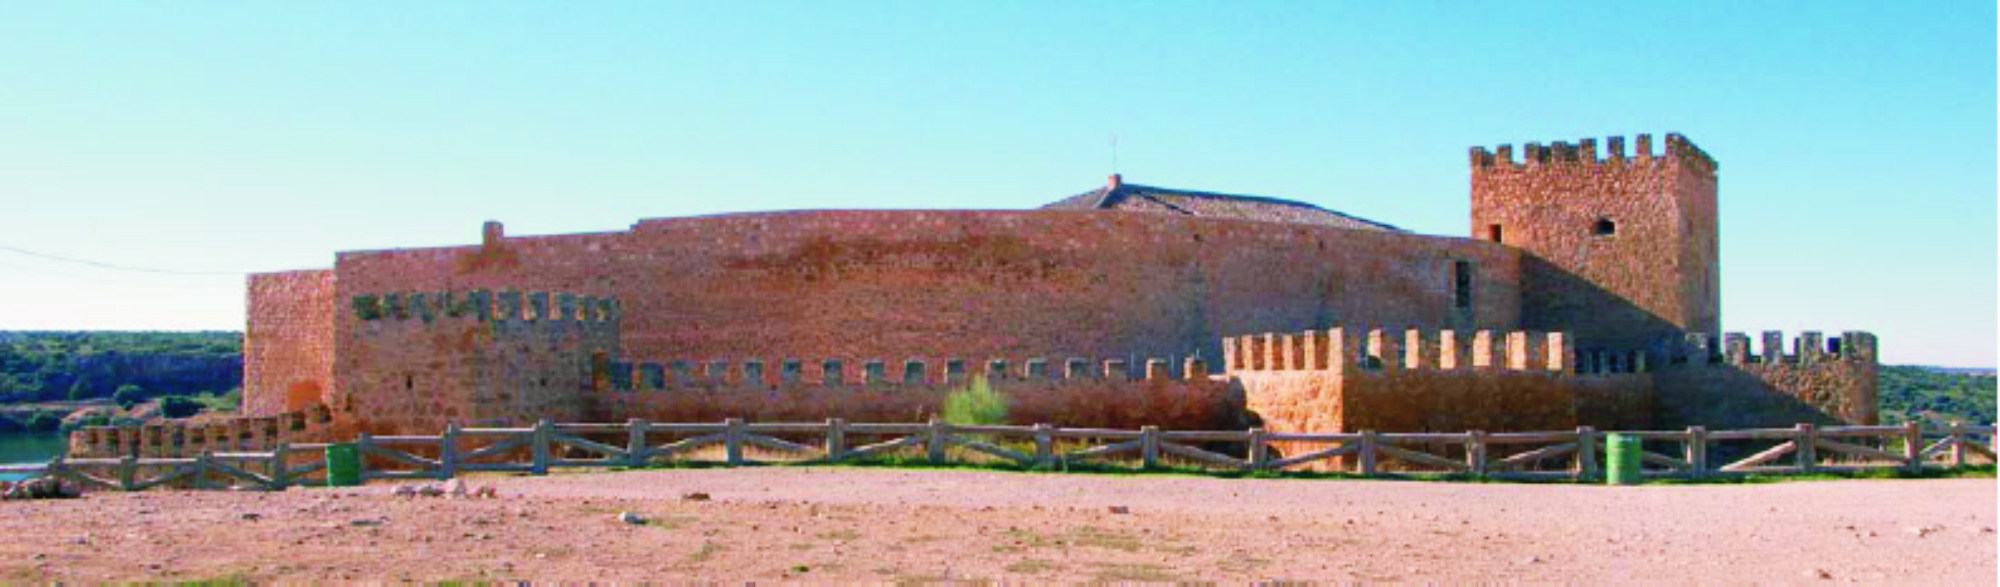 Castillo de Peñarroya, Argamasilla de Alba